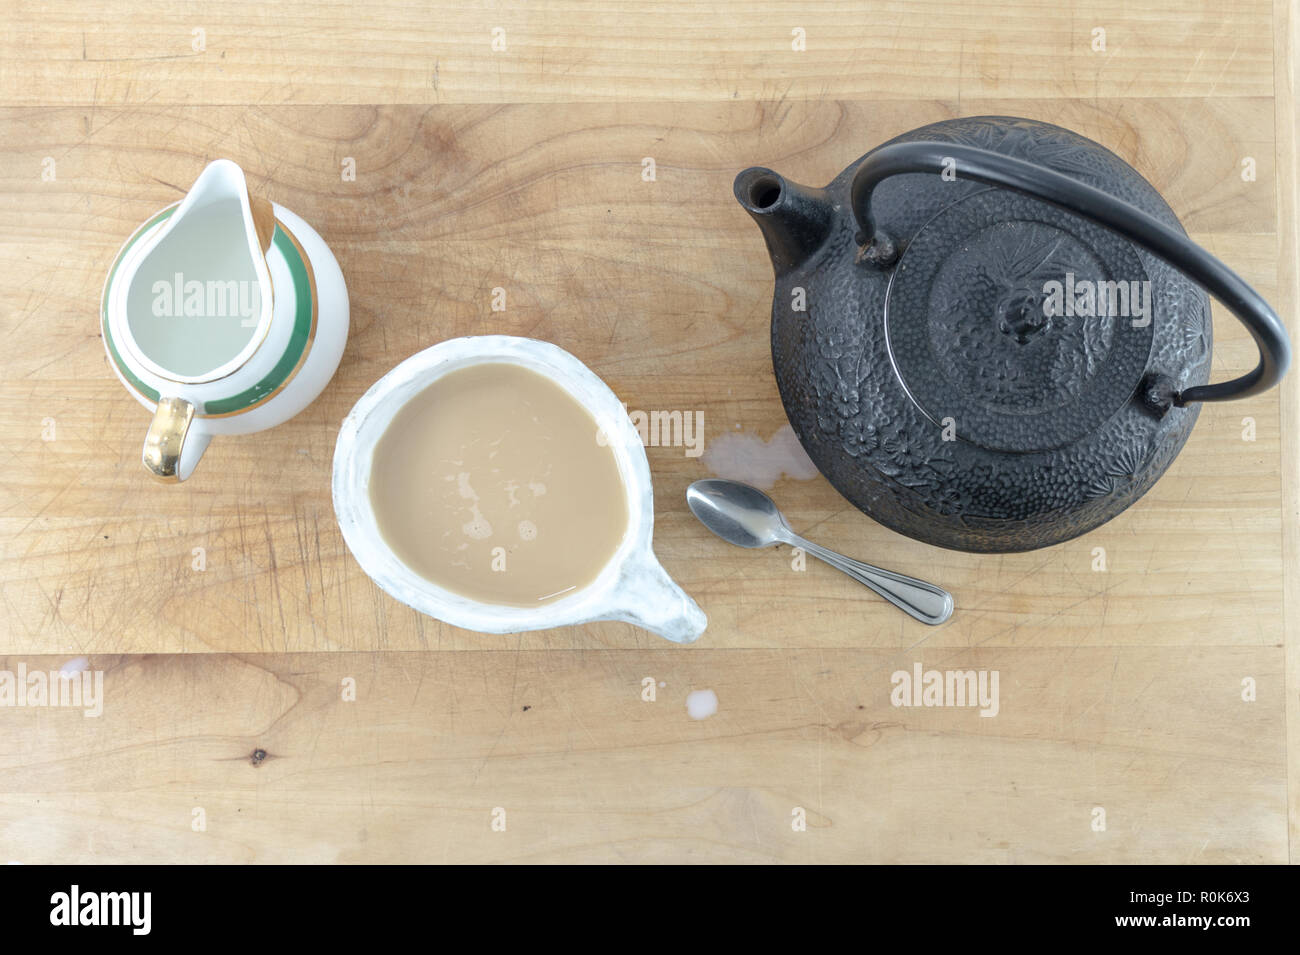 Vue de dessus en fonte noire théière avec tasse de thé chaud et pitcher de crème et une cuillère sur une table en bois ou le bac. Banque D'Images